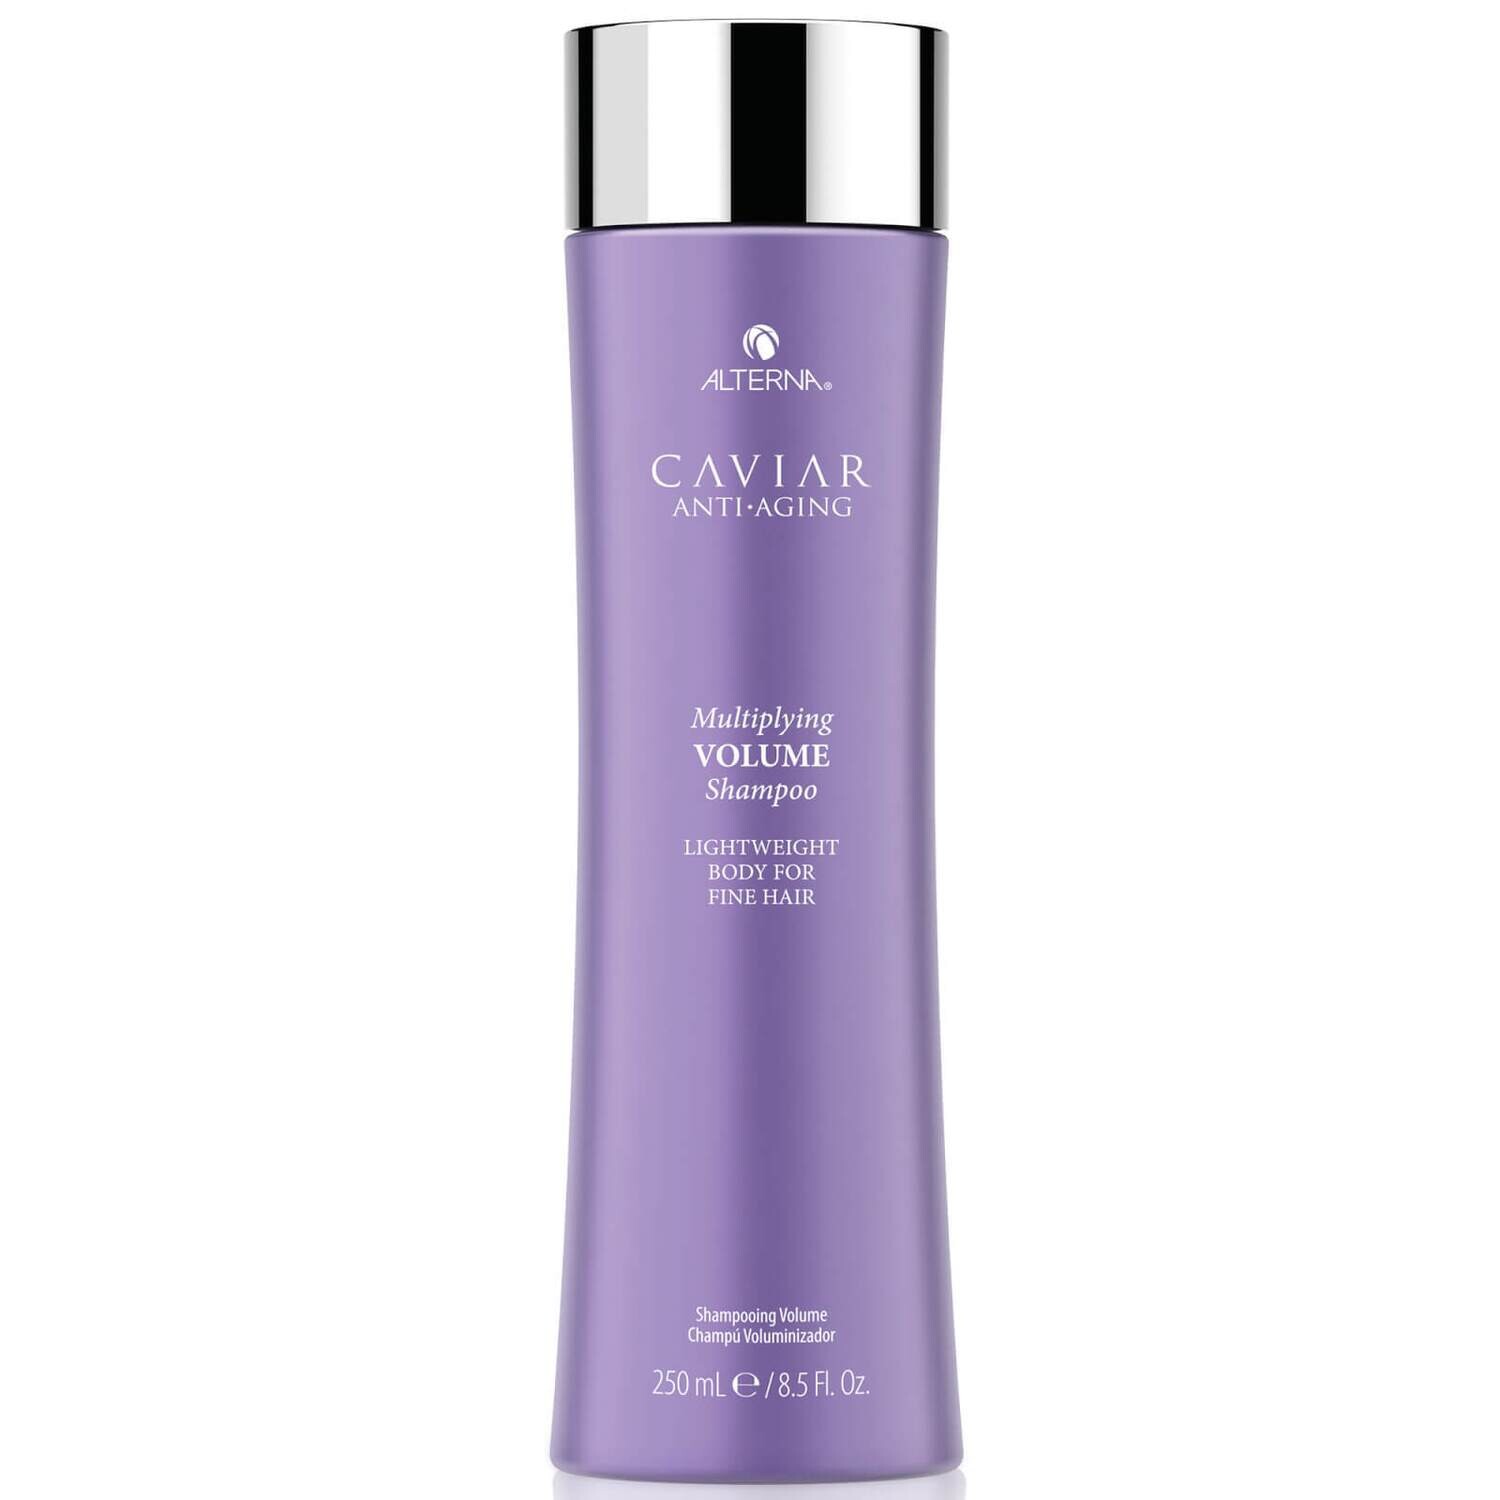 Caviar Volume Shampoo 250ml